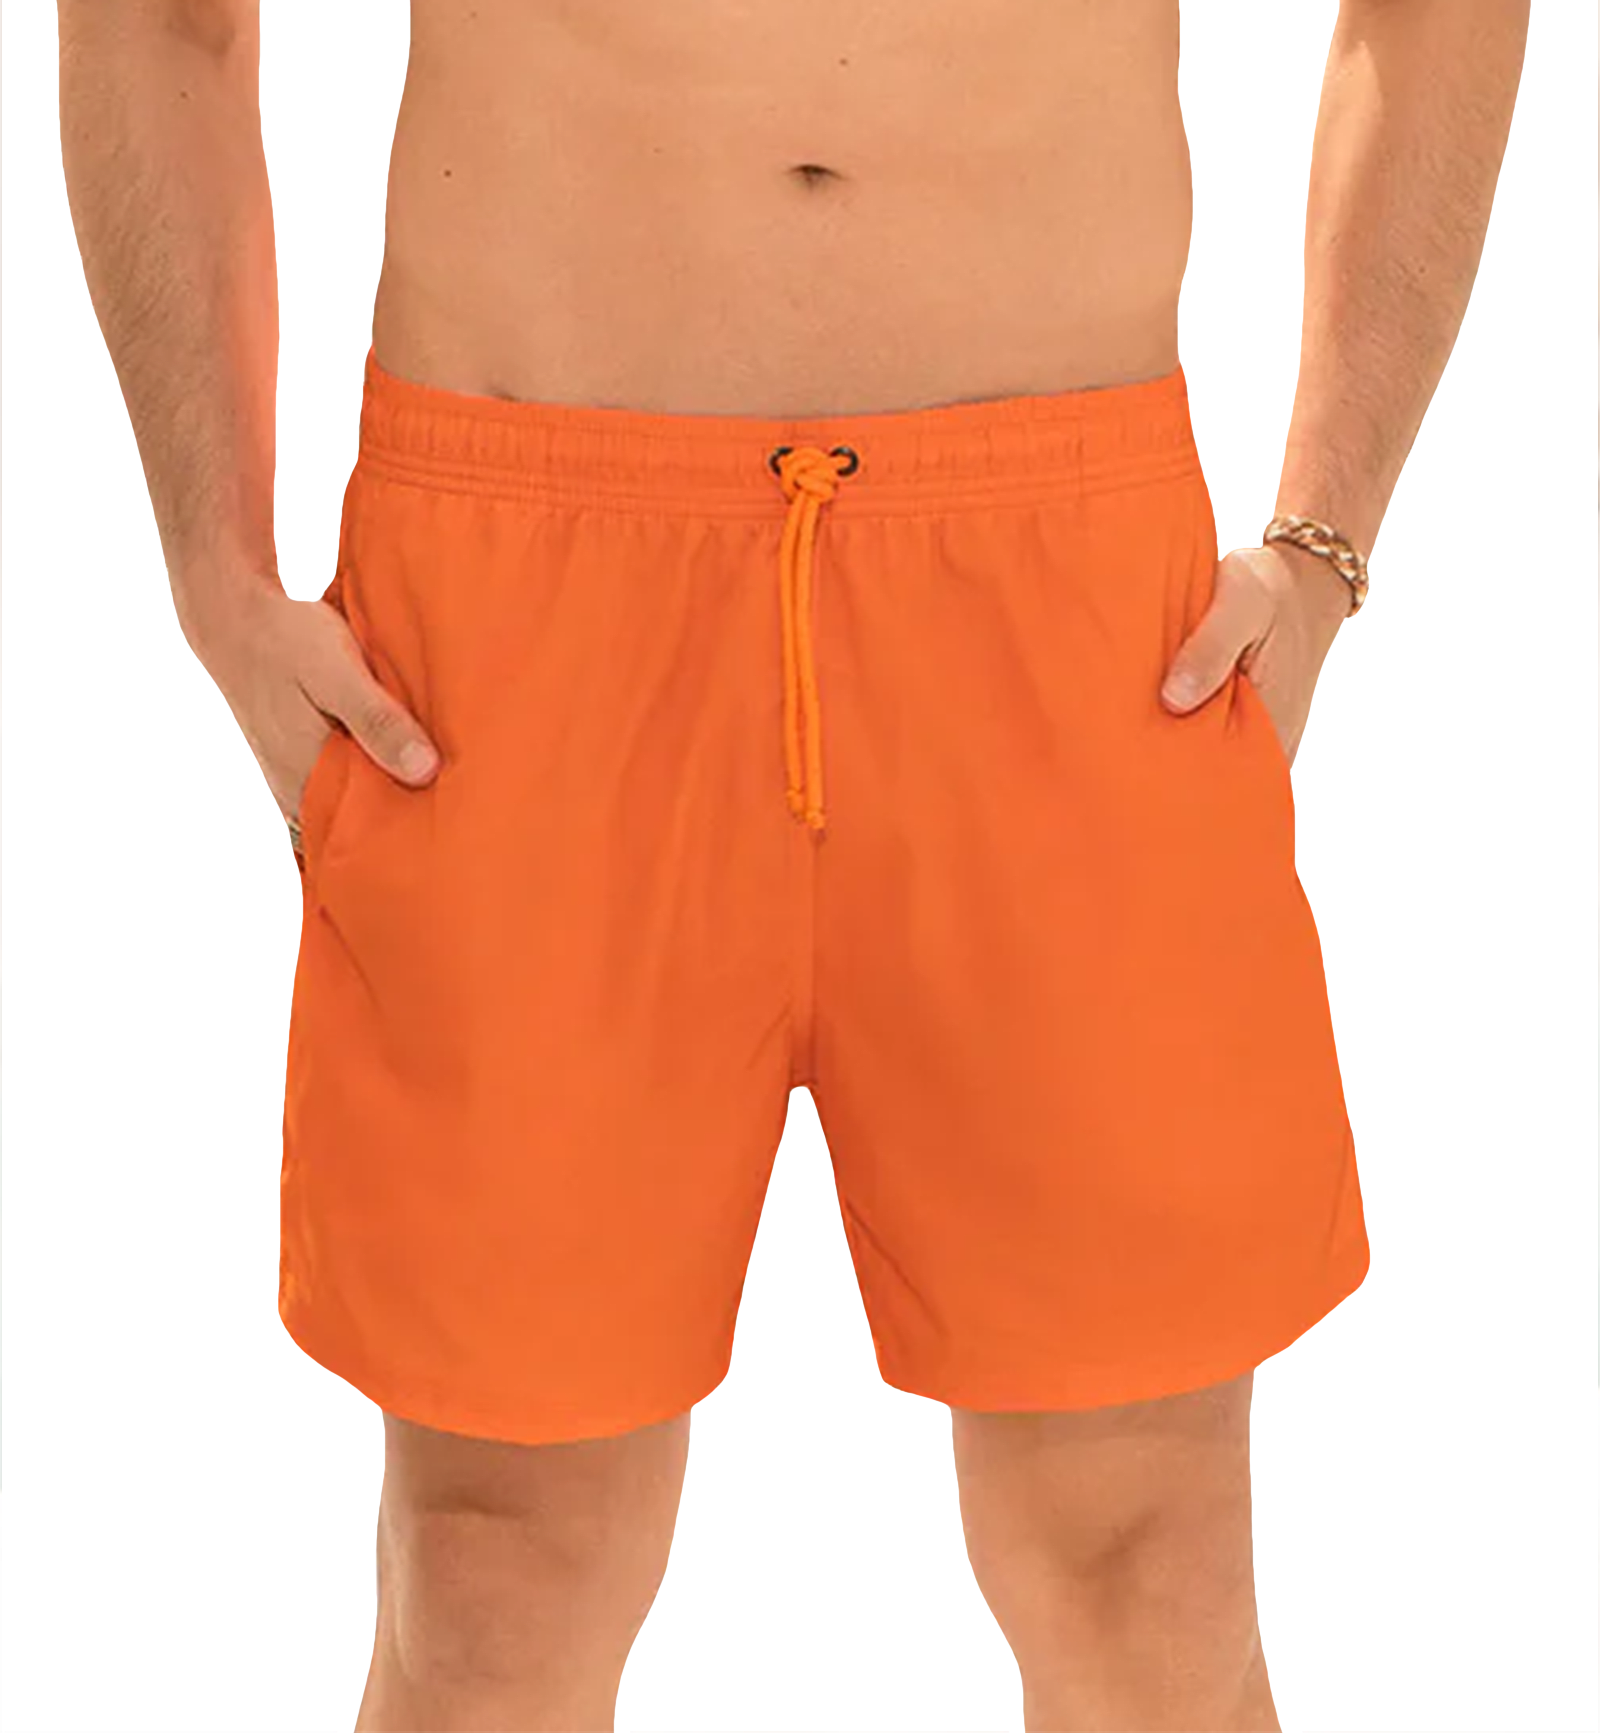 LEO Men's Eco-Friendly Quick Dry 7 inch Swim Trunk (505033),Small,Orange - Orange,Small